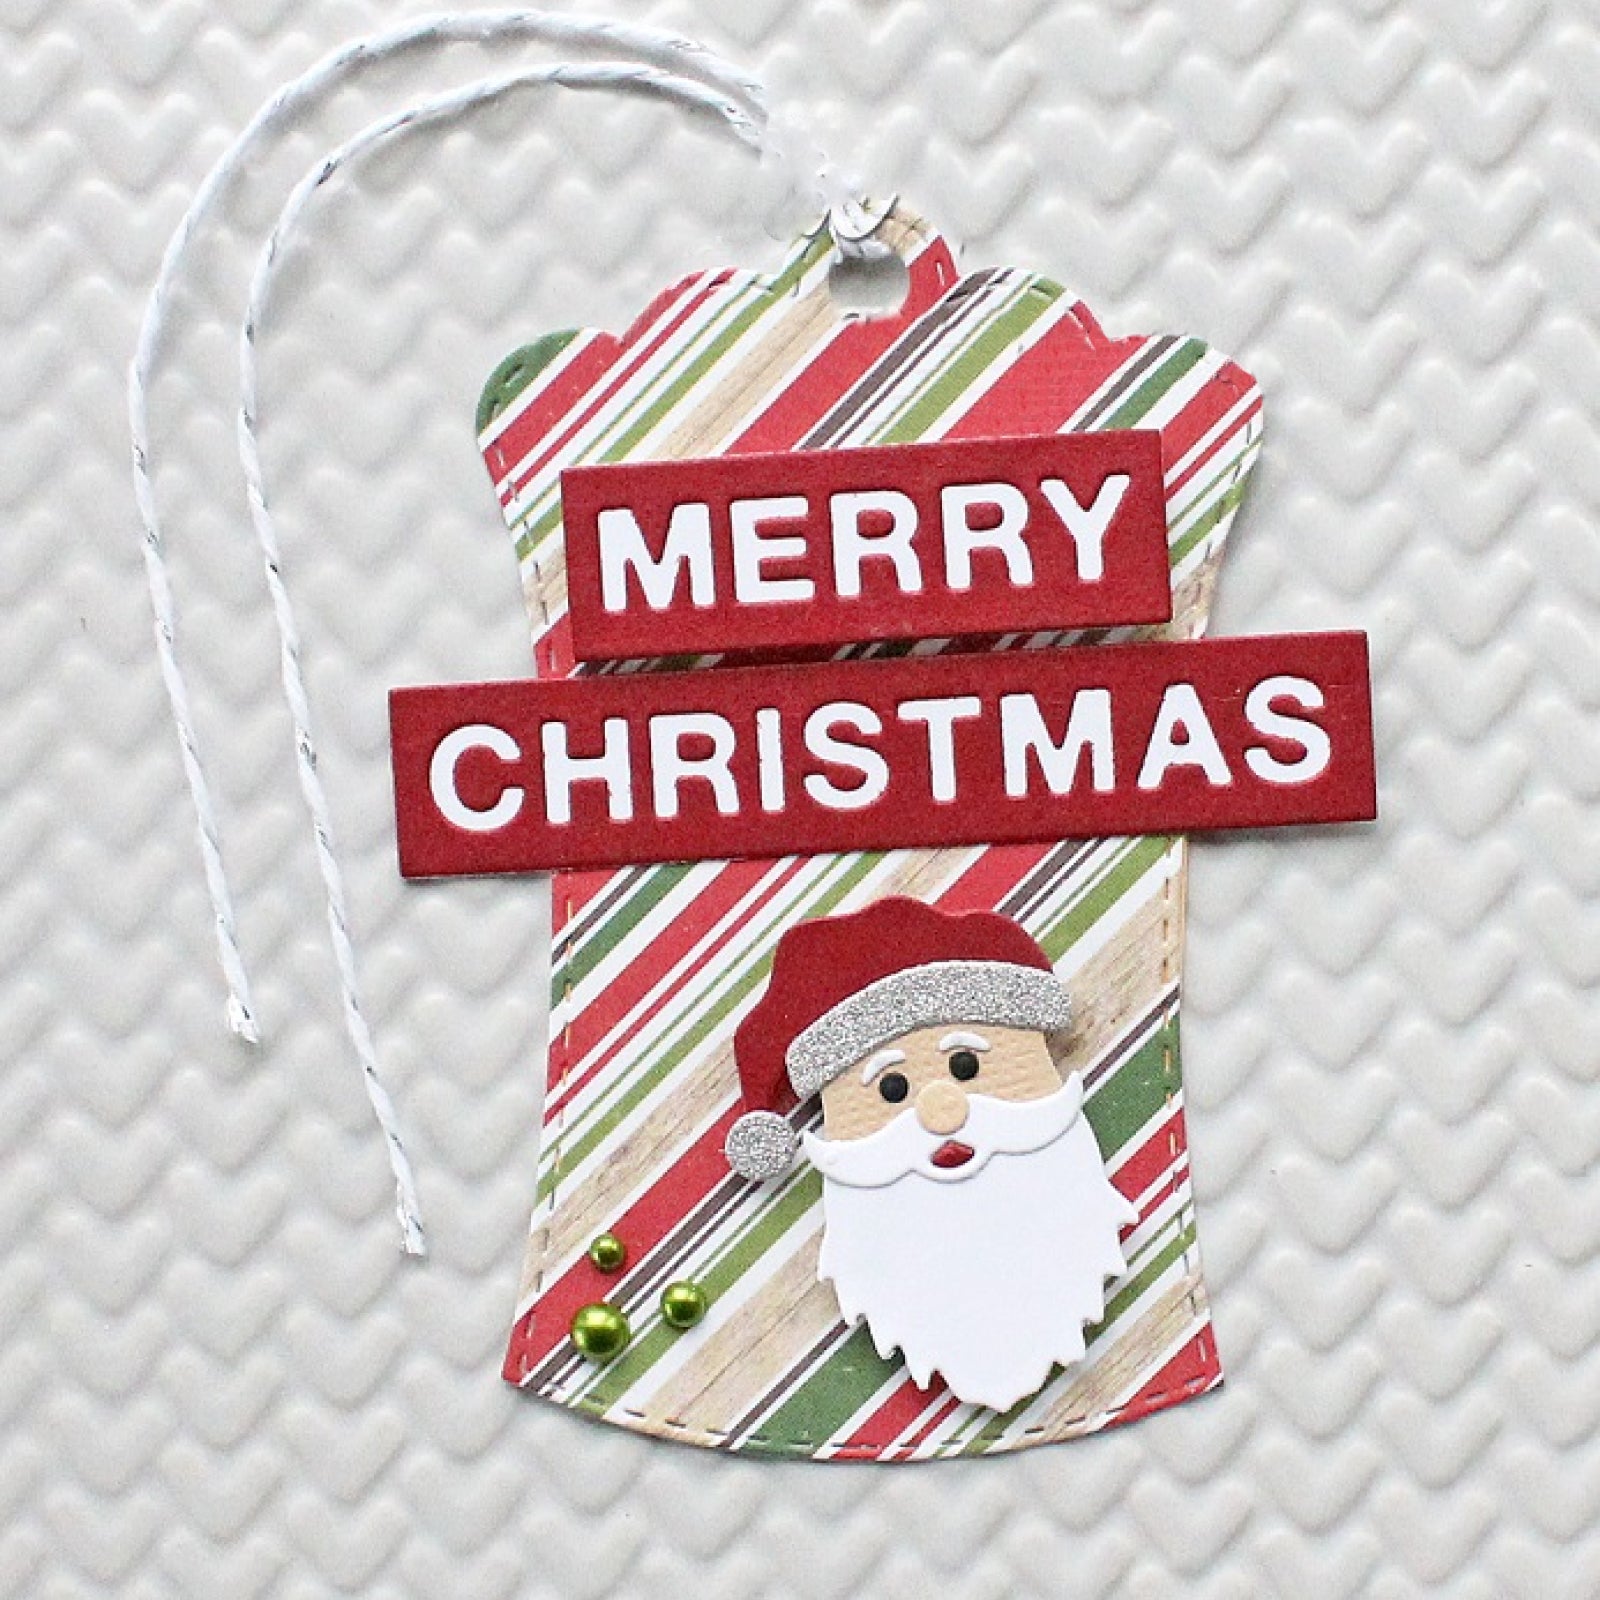 Merry Christmas Block Sentiment Words Cutting Dies – Noel Joy Season’s Greetings